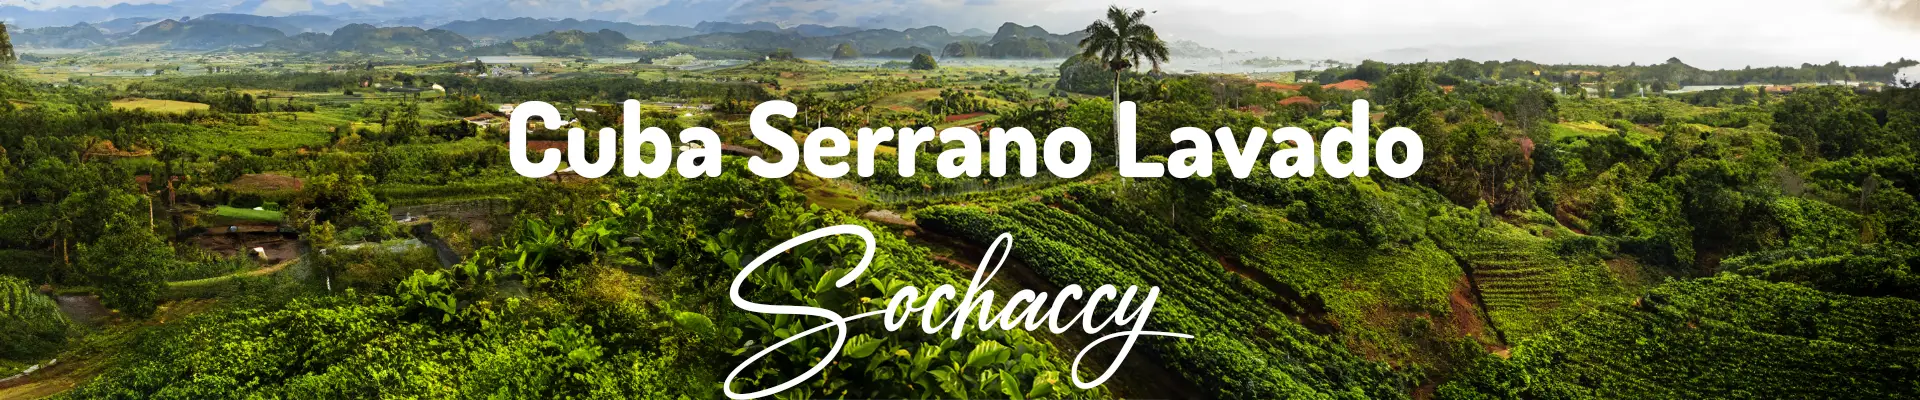 Plantacje kubańskiej kawy Serrano Lavado